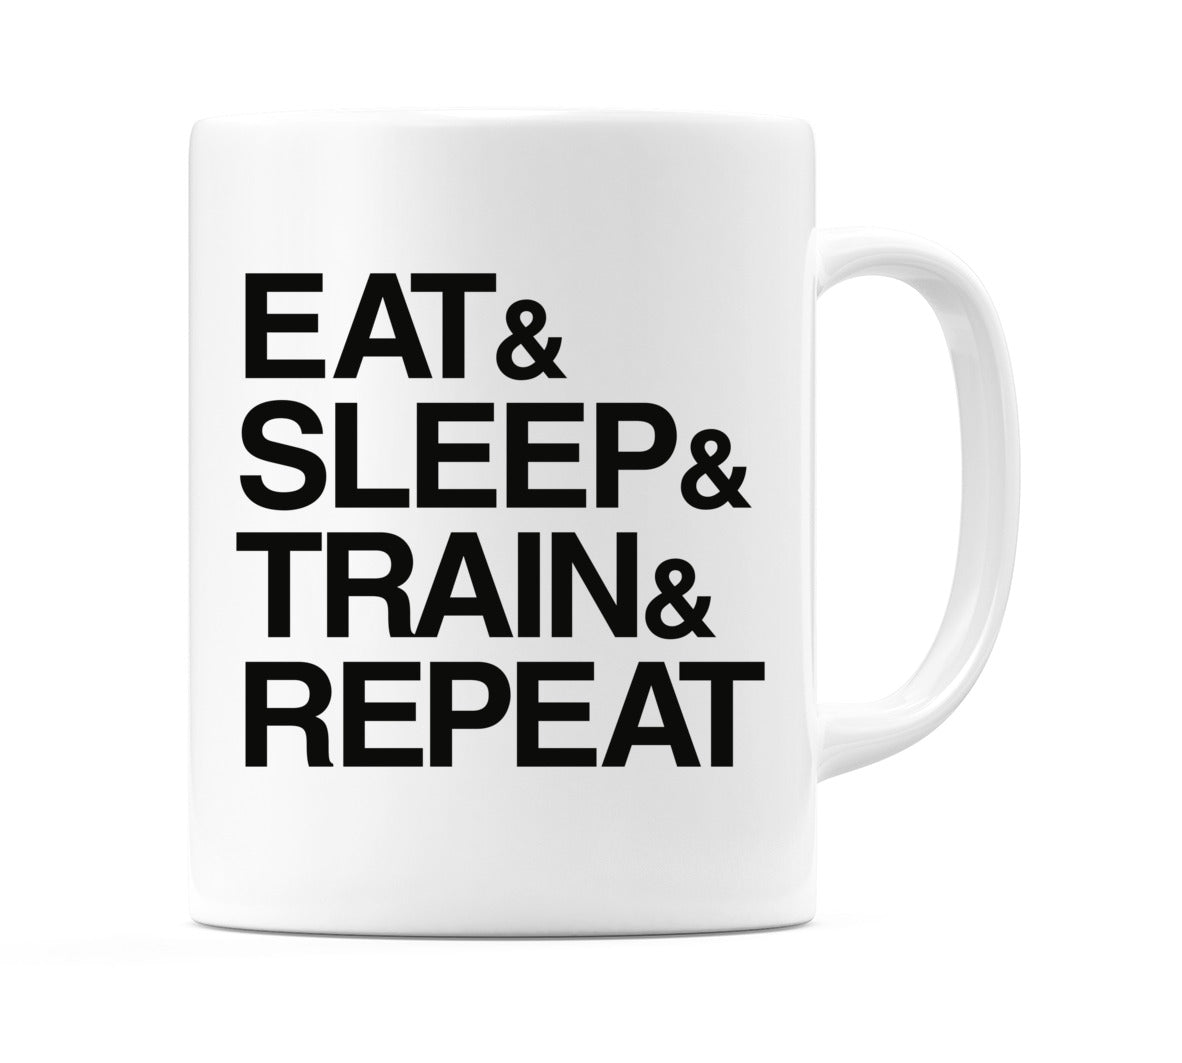 Eat & Sleep & Train & Repeat Mug